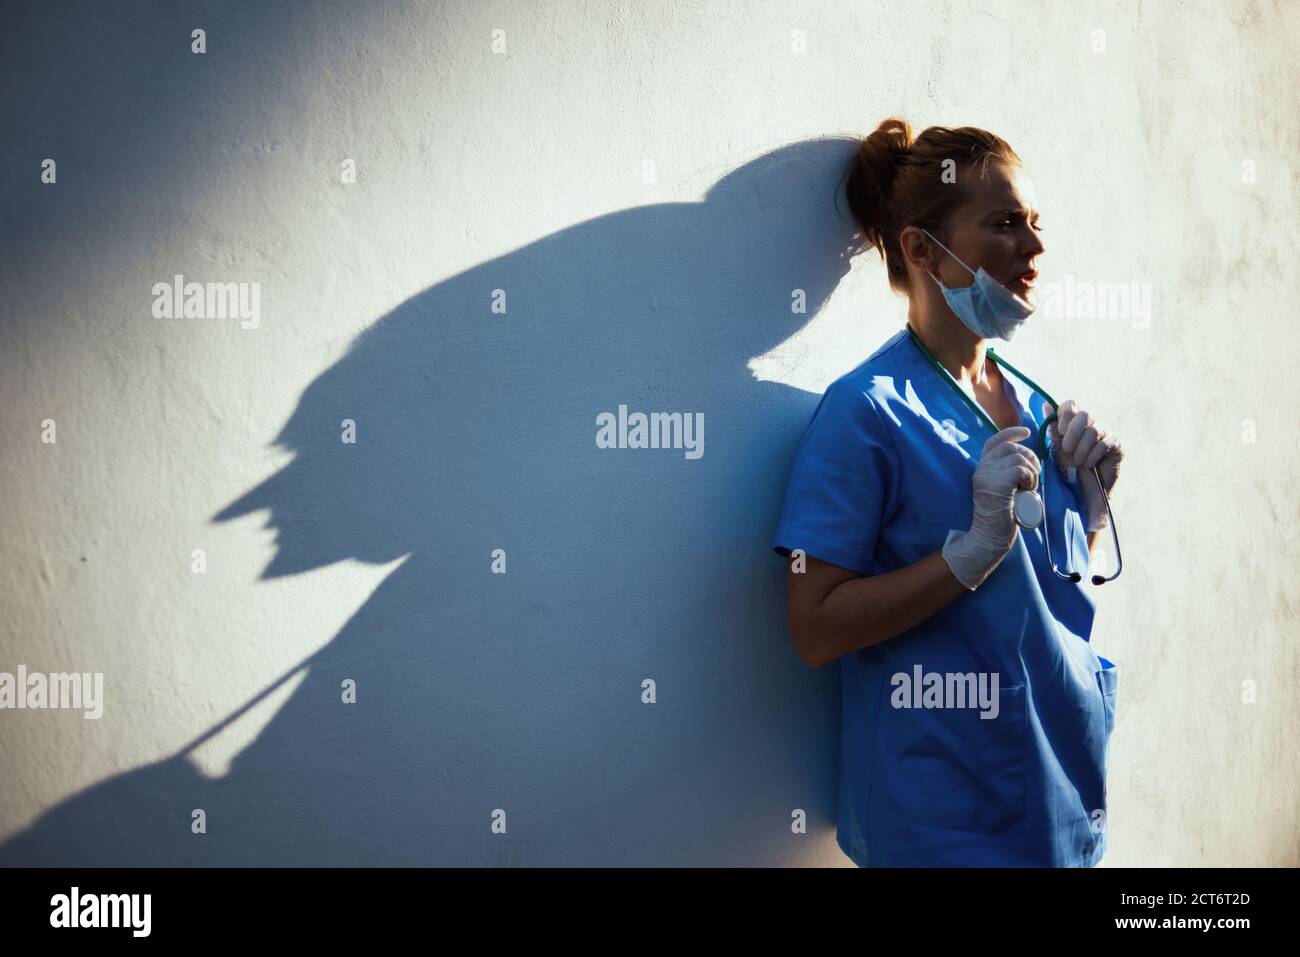 Covid-19 Pandemie. Müde moderne Arzt Frau in Scrubs mit Stethoskop, medizinische Maske und Gummihandschuhe außerhalb der Wand. Stockfoto